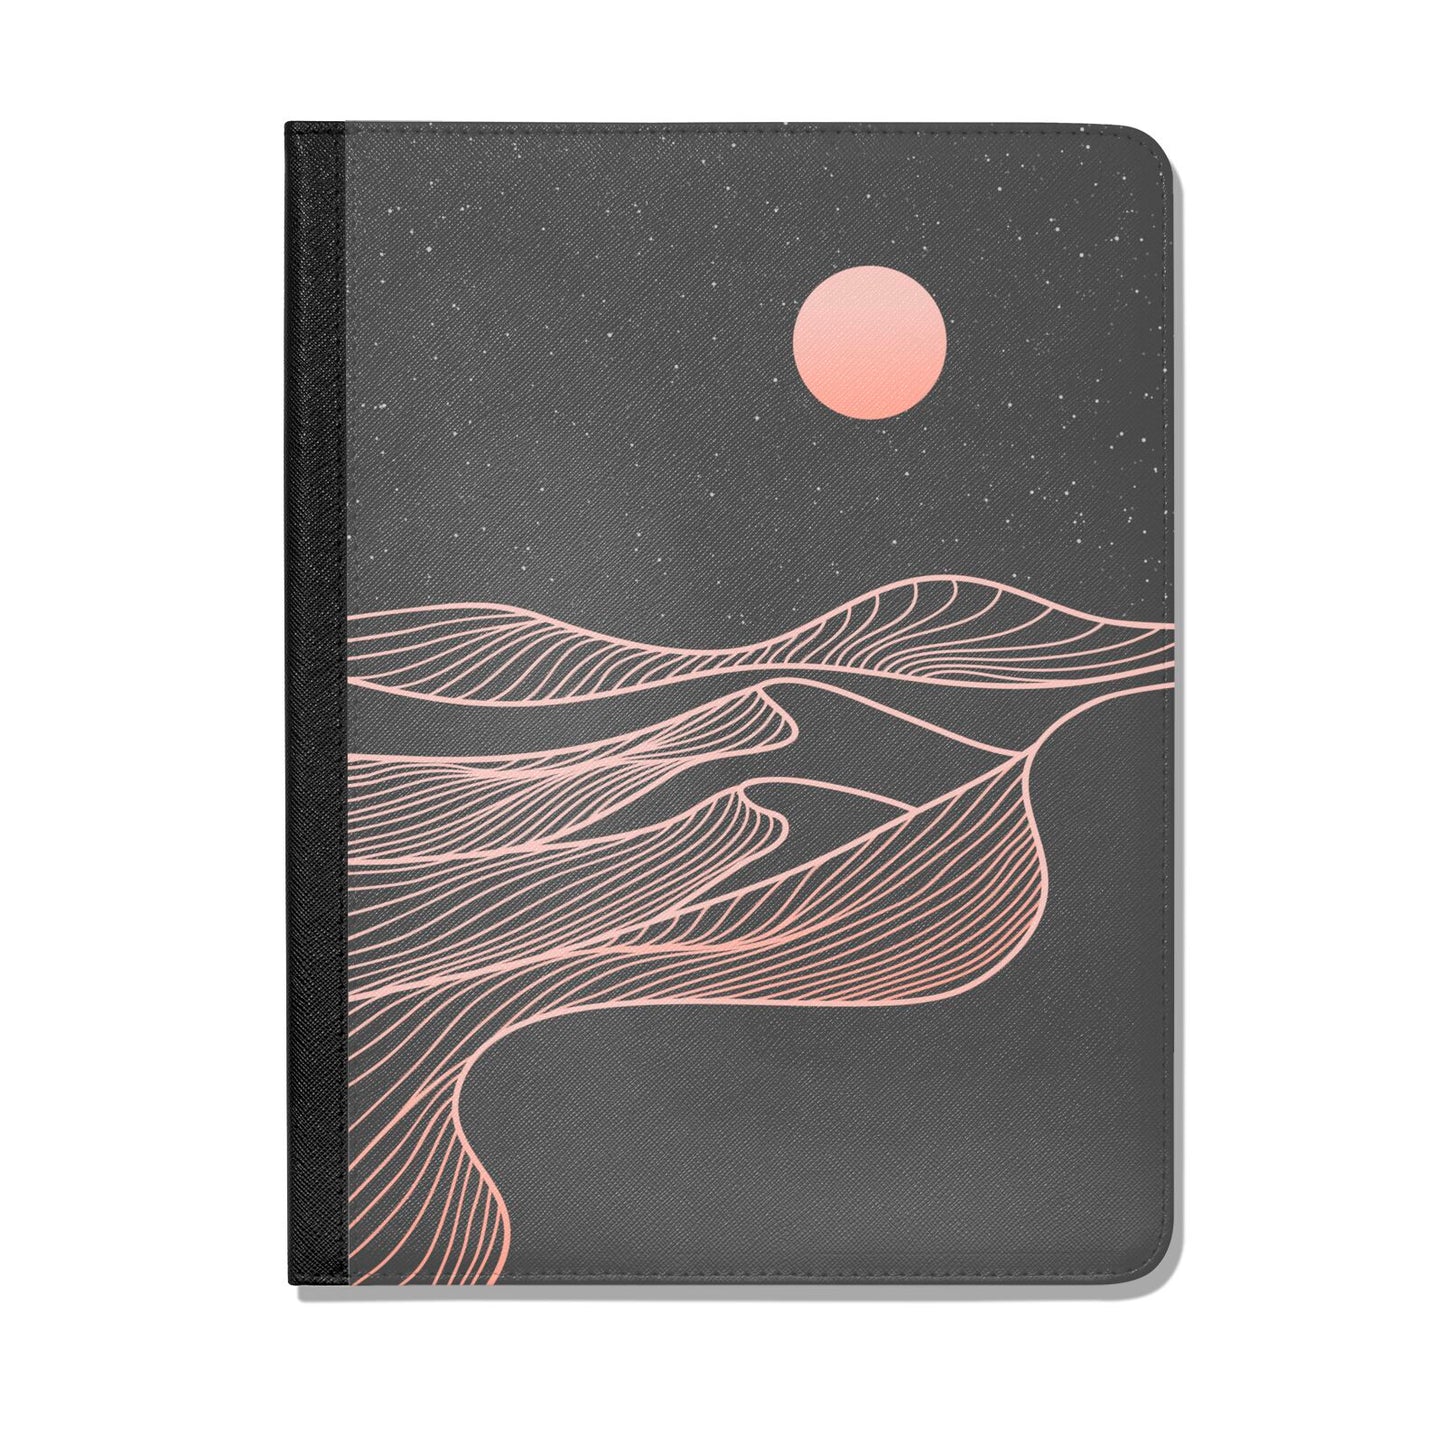 Abstract Sunset Apple iPad Leather Folio Case